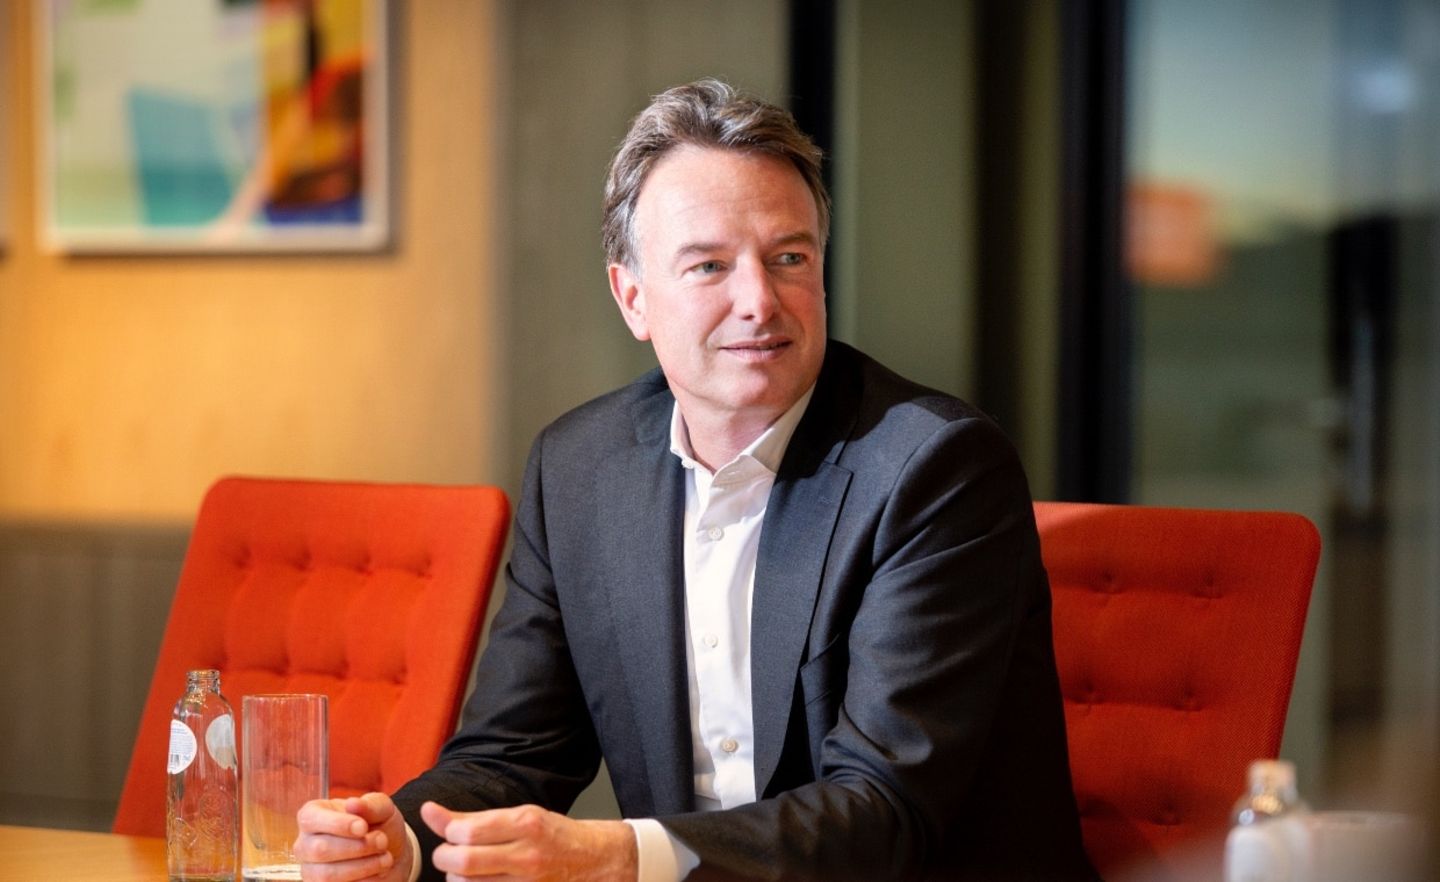 Steven van Rijswijk ist seit Juli 2020 CEO und Chairman des Executive Board der niederländischen ING Group